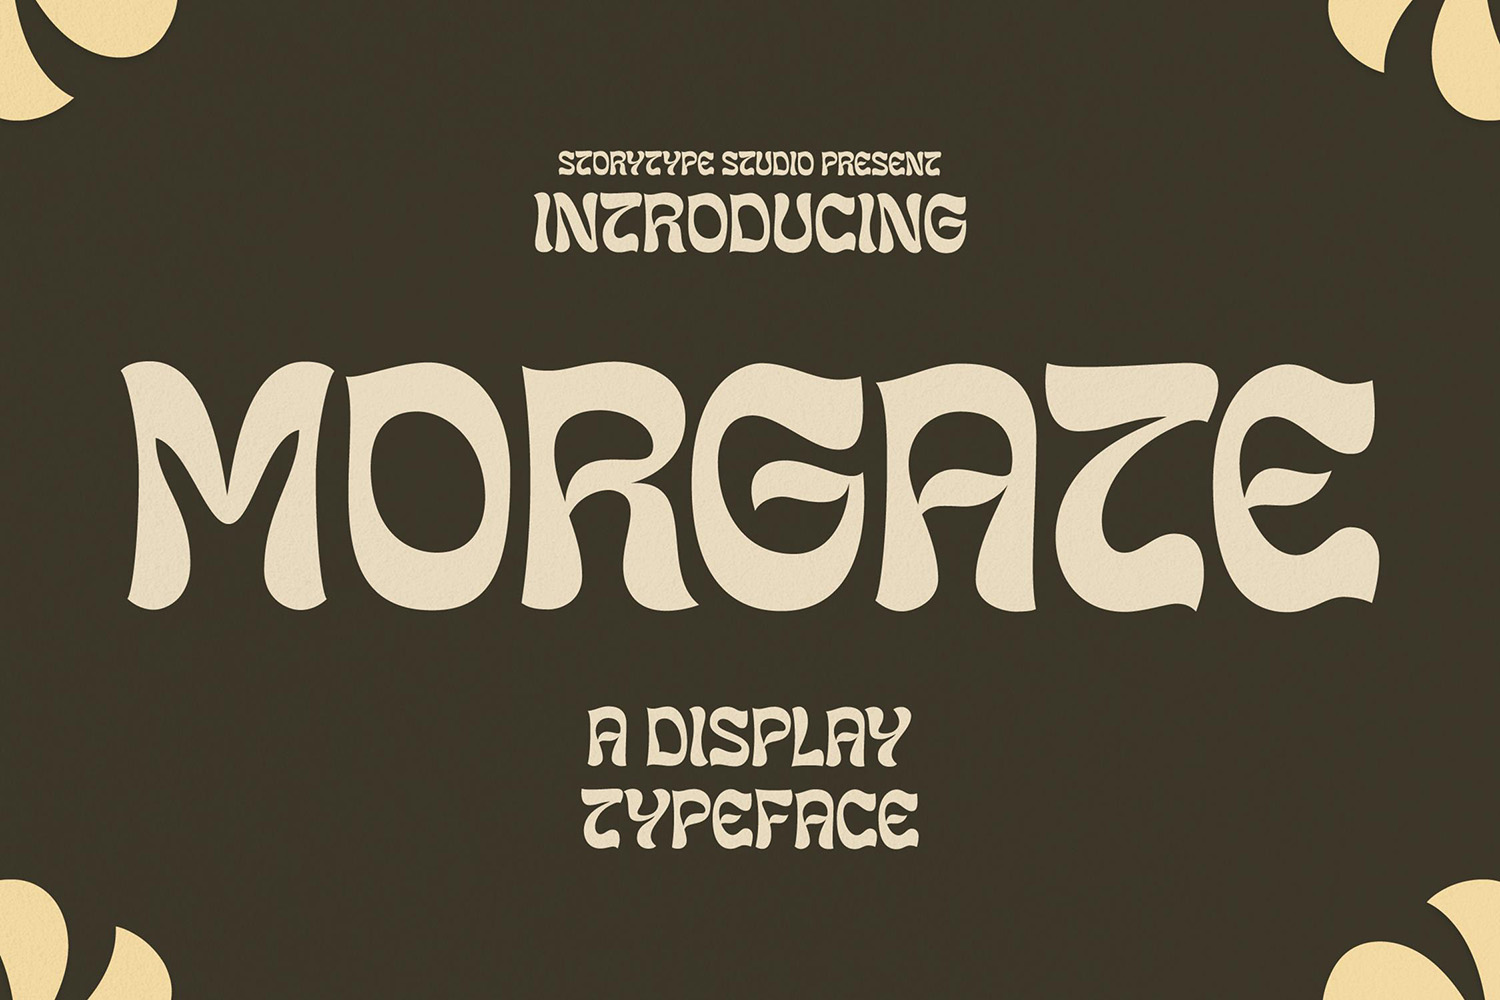 Morgate Free Font